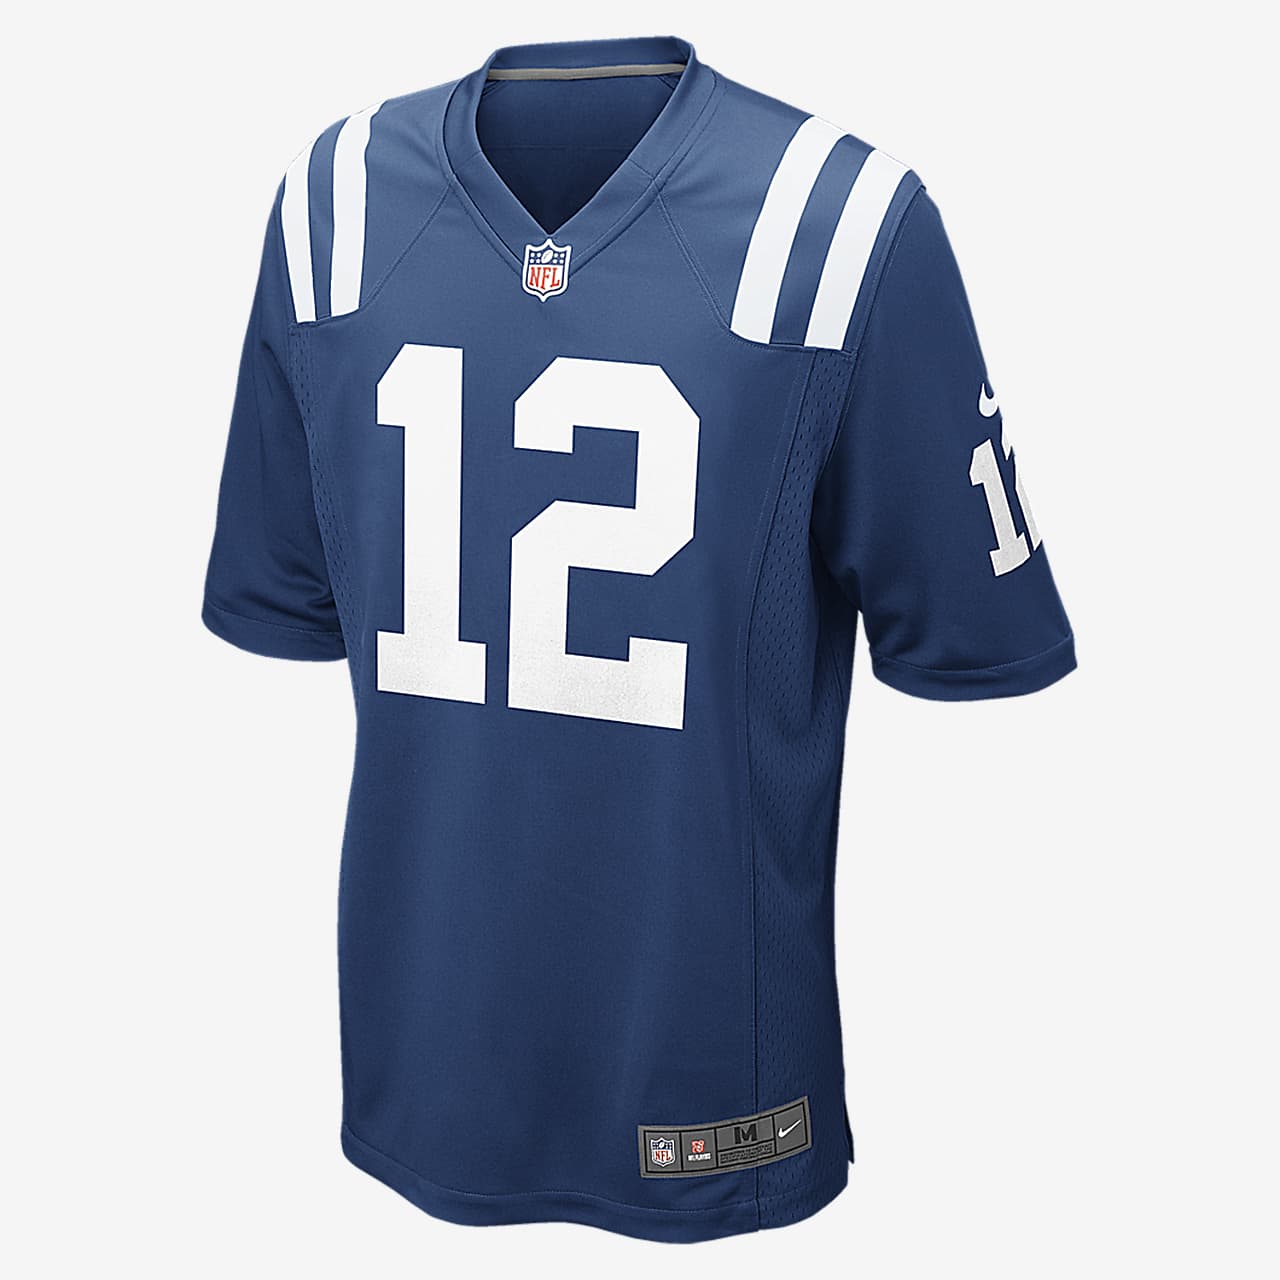 Reducción fresa Transeúnte Camiseta de fútbol americano para hombre NFL Indianapolis Colts (Andrew Luck).  Nike.com